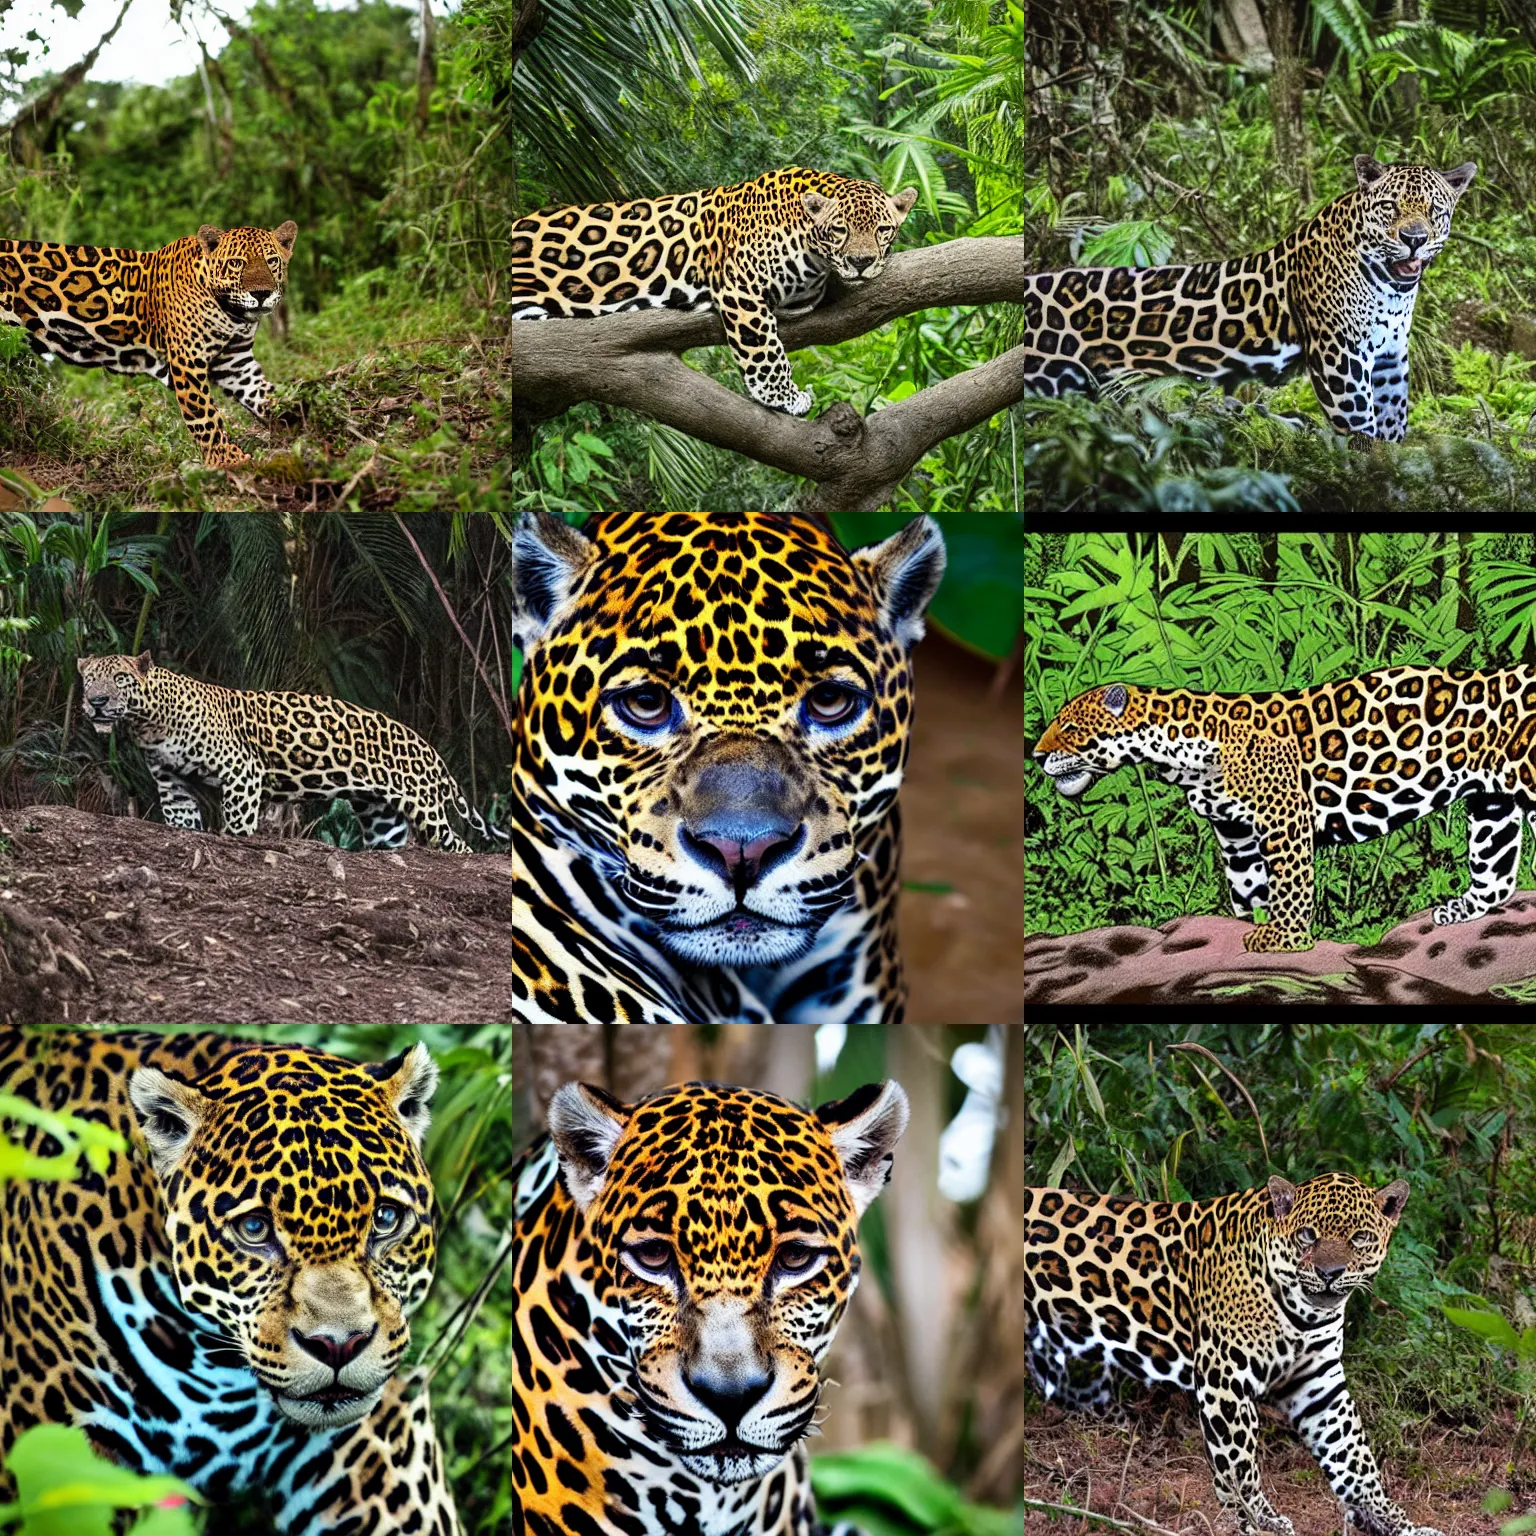 Prompt: A jaguar in the jungle